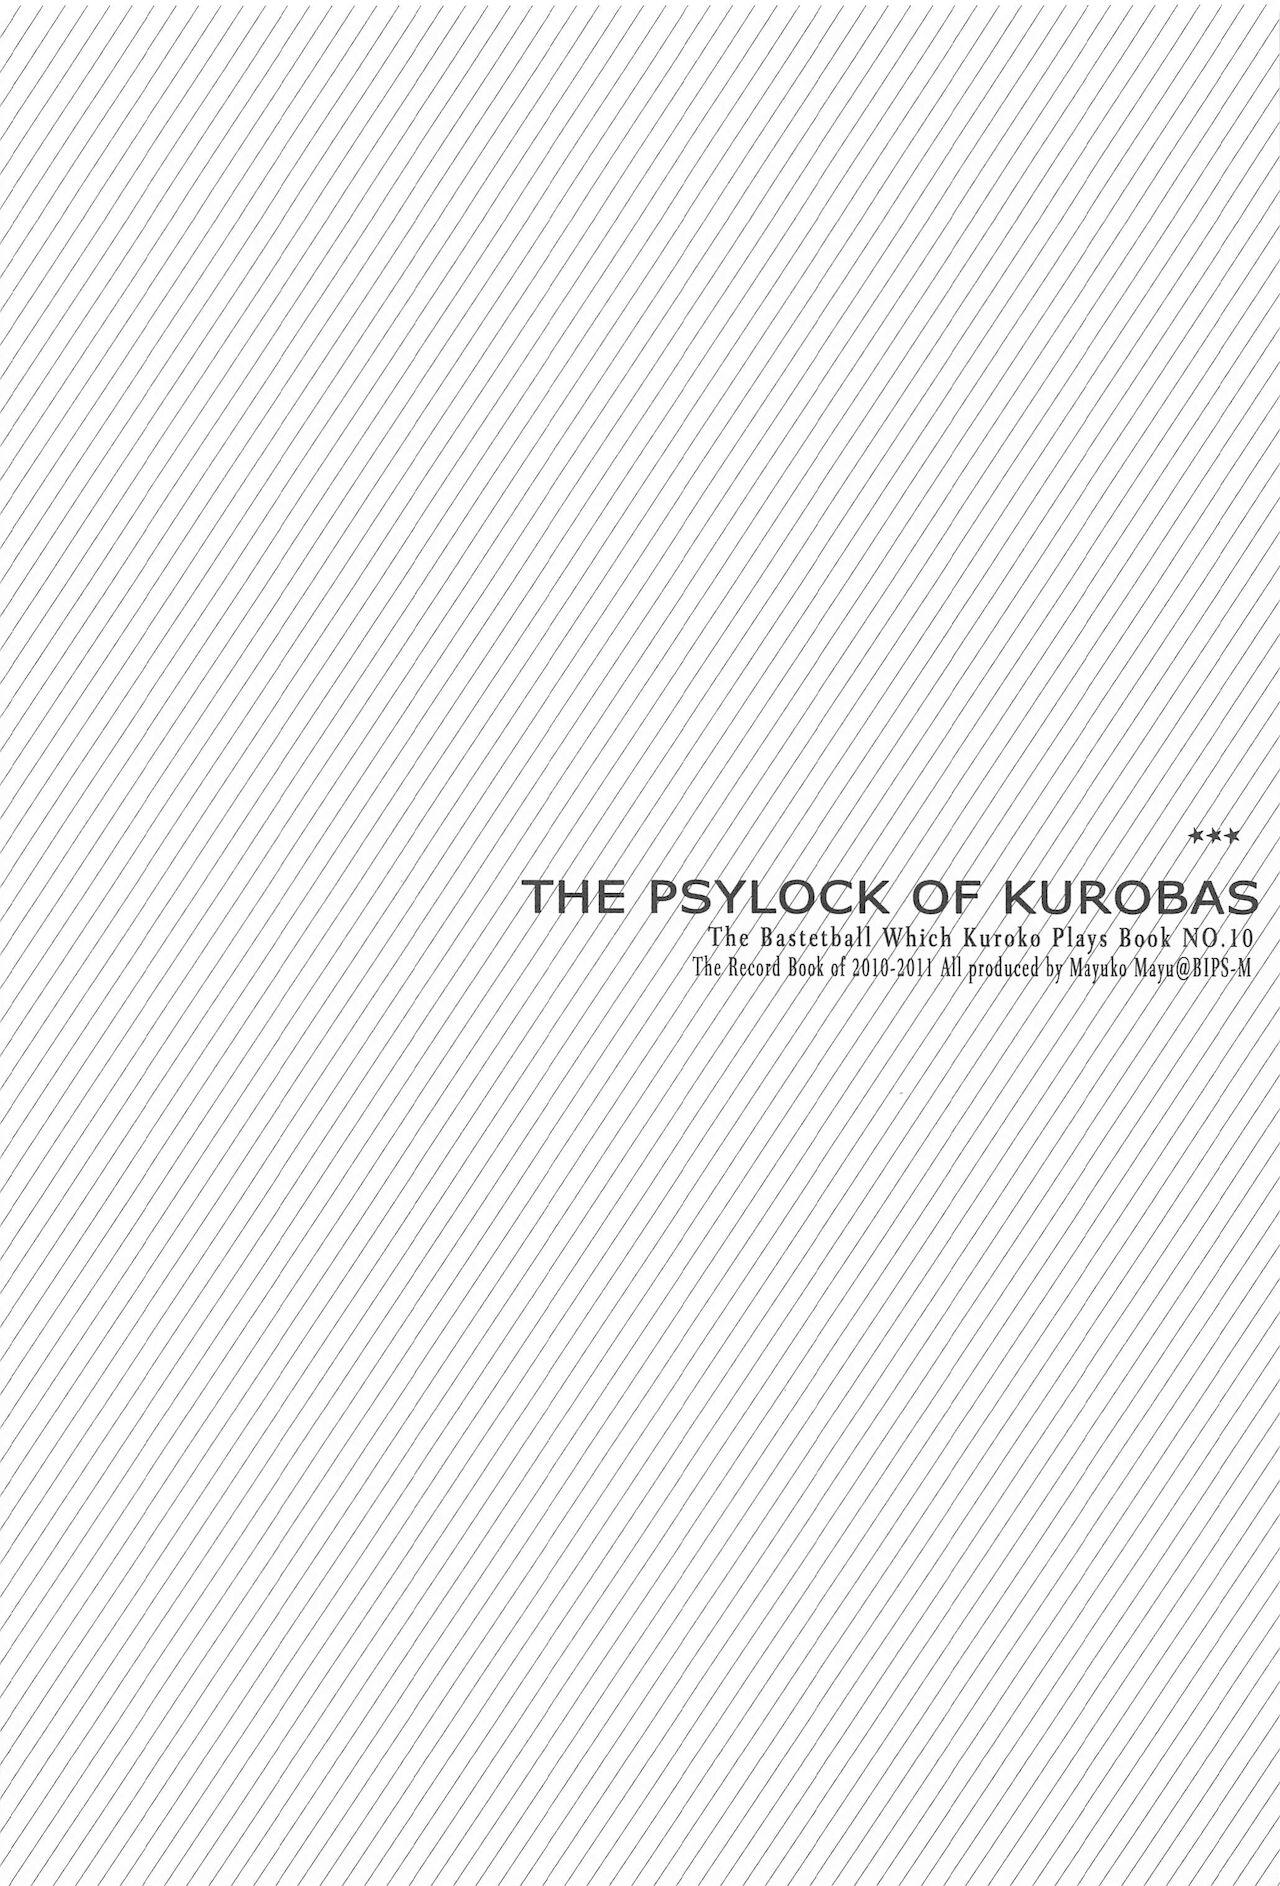 THE PSYLOCK OF KUROBAS 35